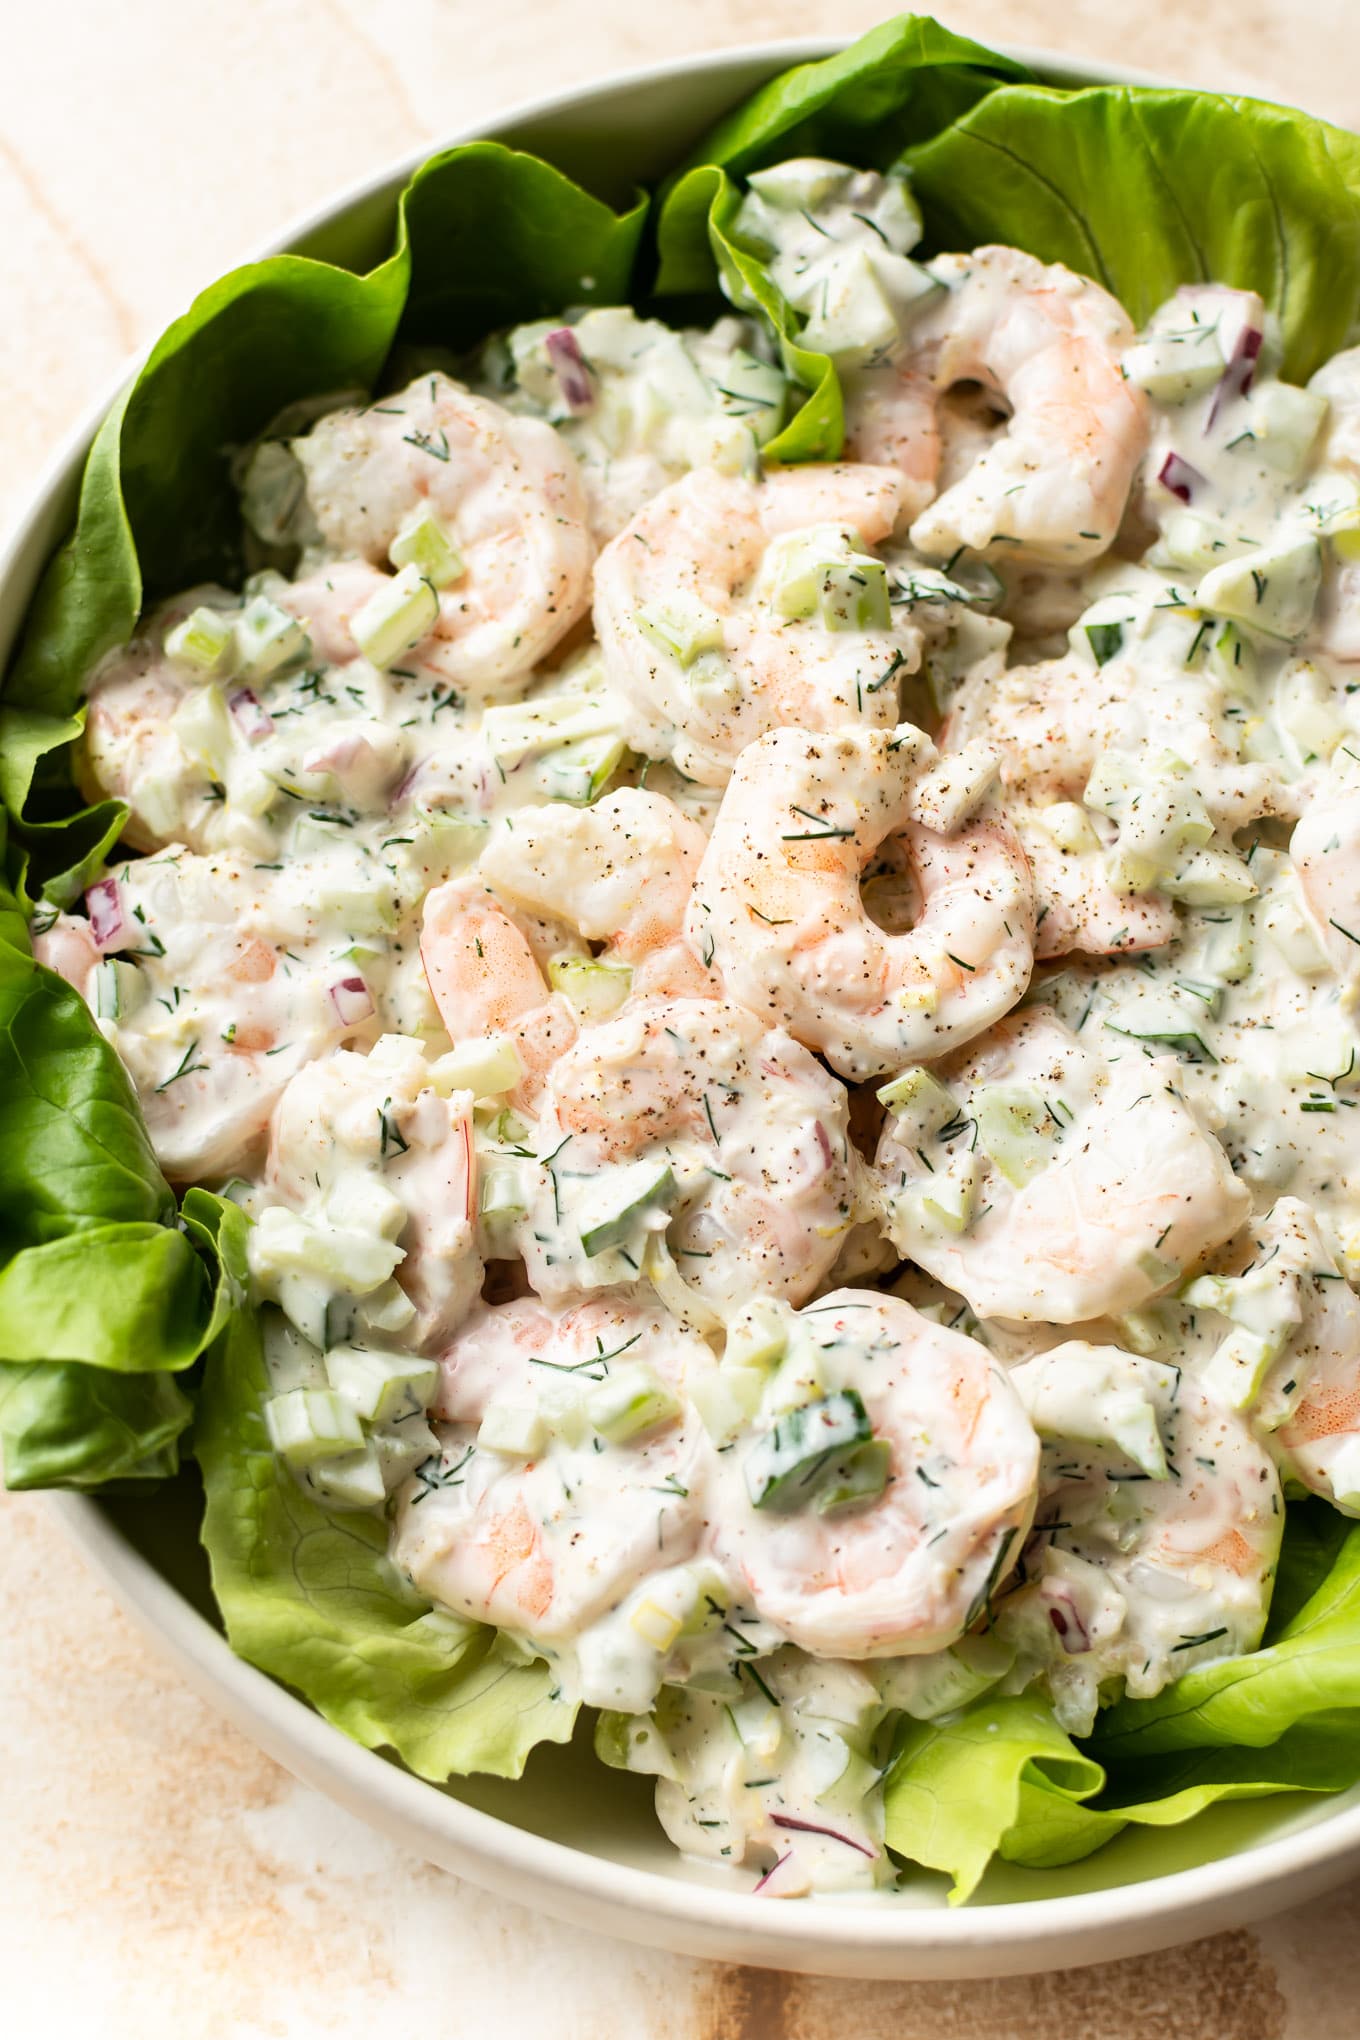 https://www.saltandlavender.com/wp-content/uploads/2020/08/shrimp-salad-recipe-1.jpg